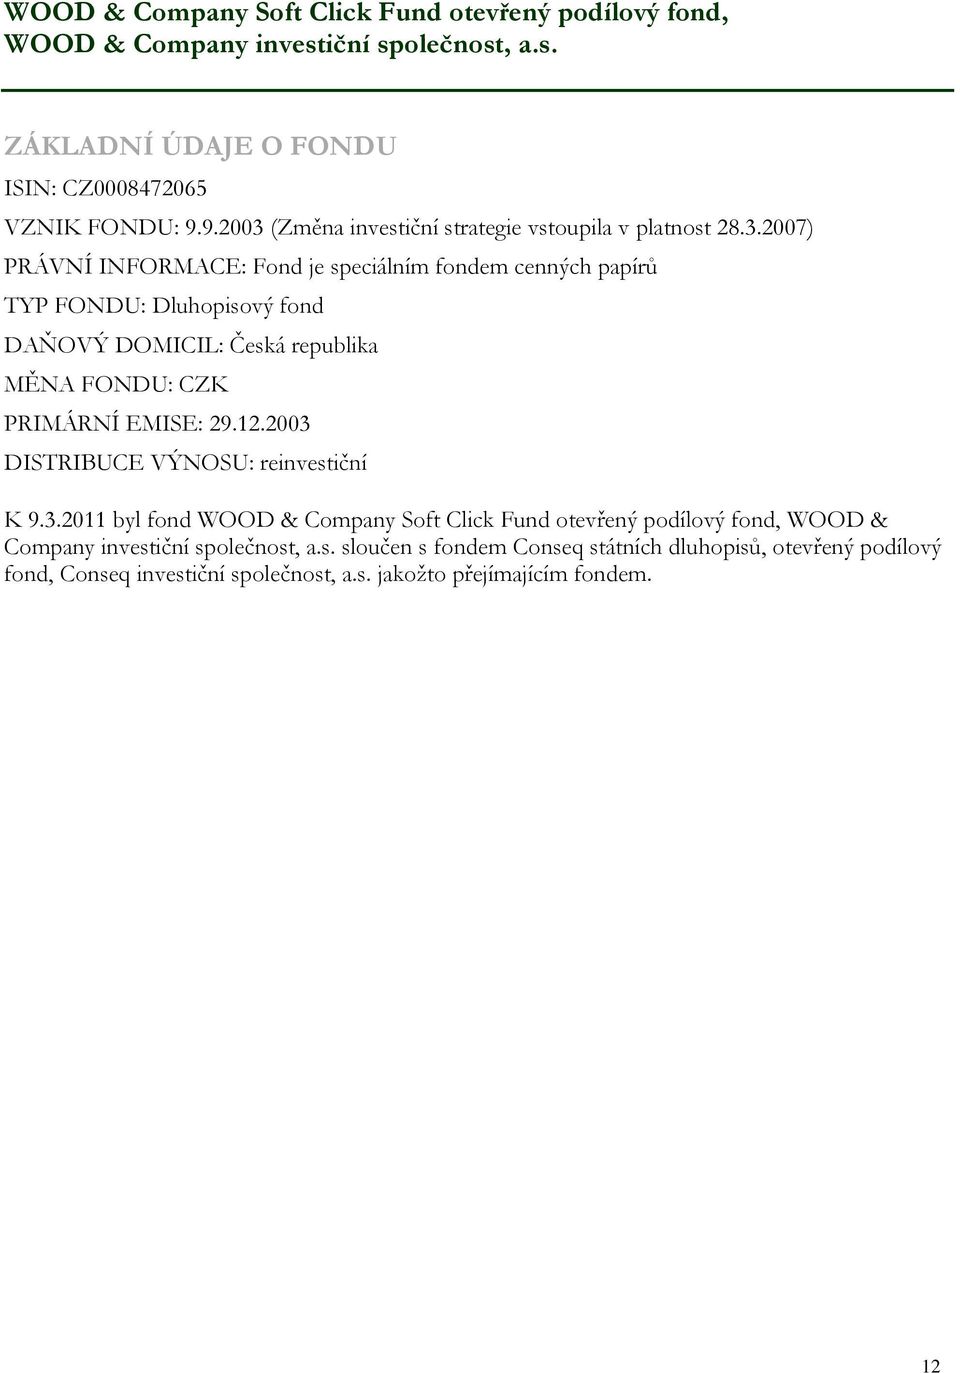 12.2003 DISTRIBUCE VÝNOSU: reinvestiční K 9.3.2011 byl fond WOOD & Company Soft Click Fund otevřený podílový fond, WOOD & Company investiční společnost, a.s. sloučen s fondem Conseq státních dluhopisů, otevřený podílový fond, Conseq investiční společnost, a.